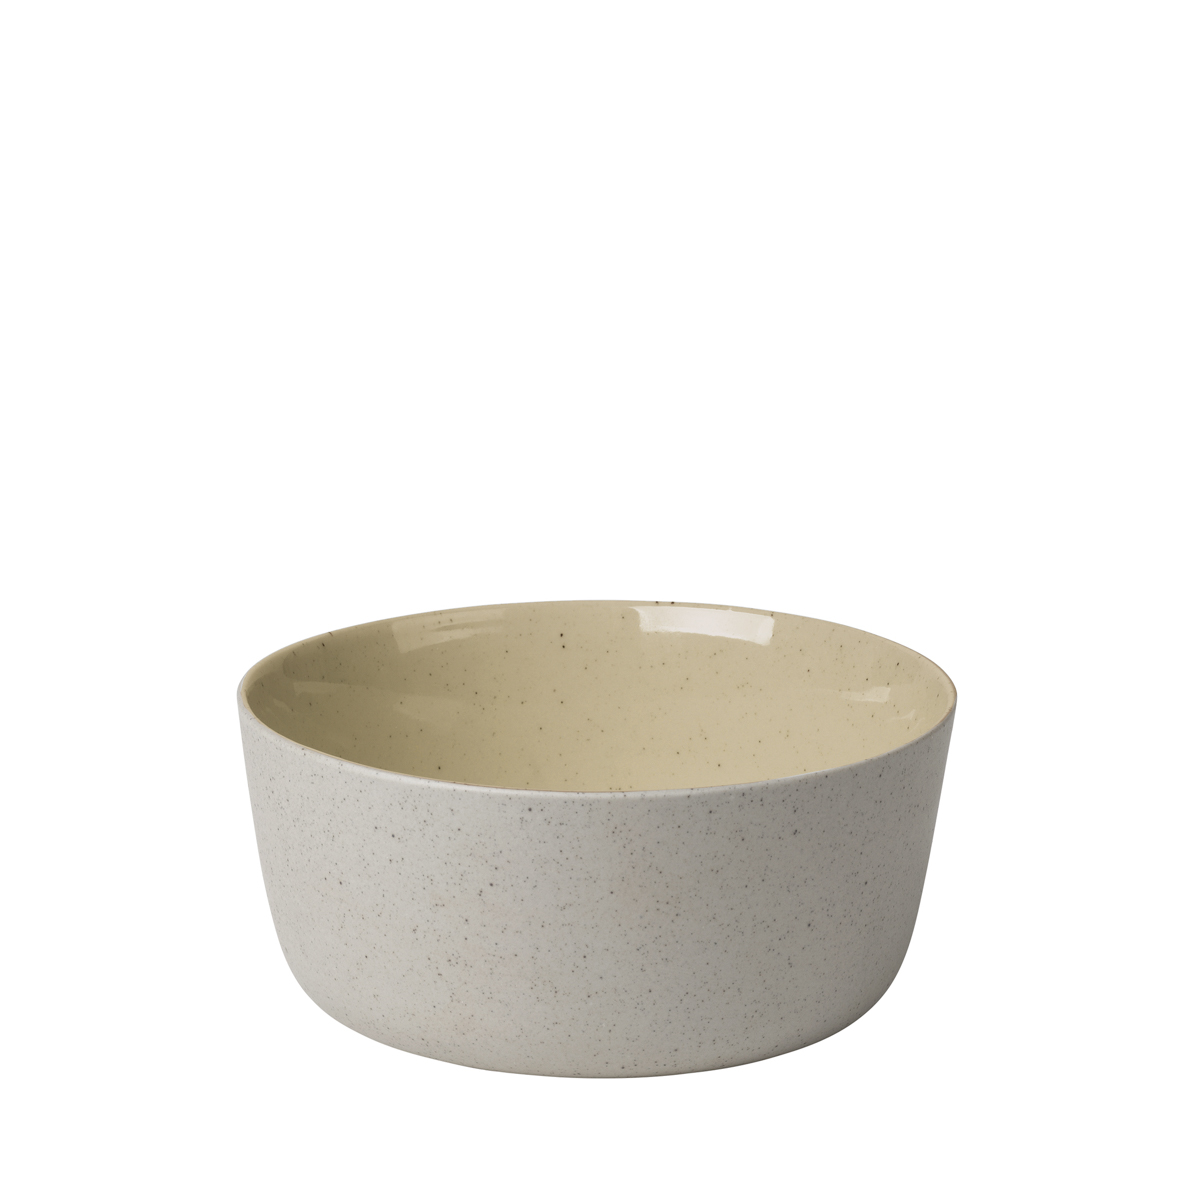 Schale -SABLO- Savannah, Ø 13 cm. Material: Keramik. Von Blomus.